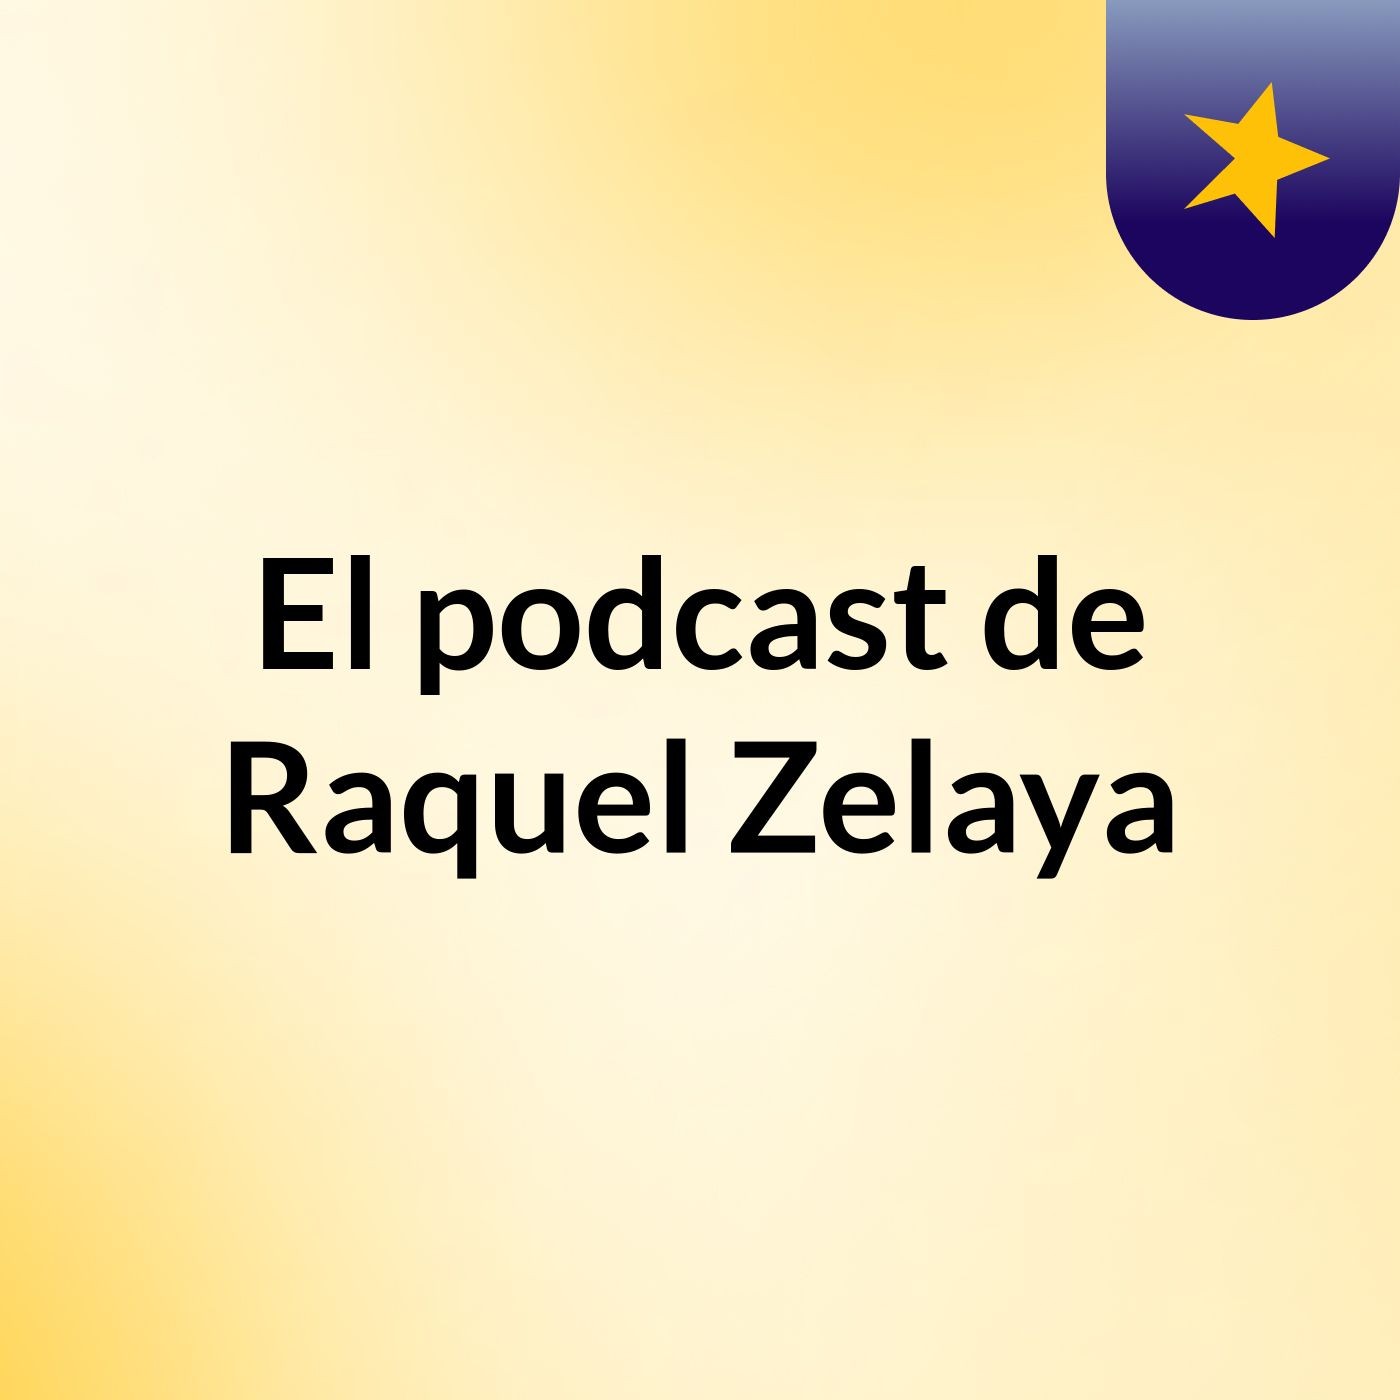 El podcast de Raquel Zelaya